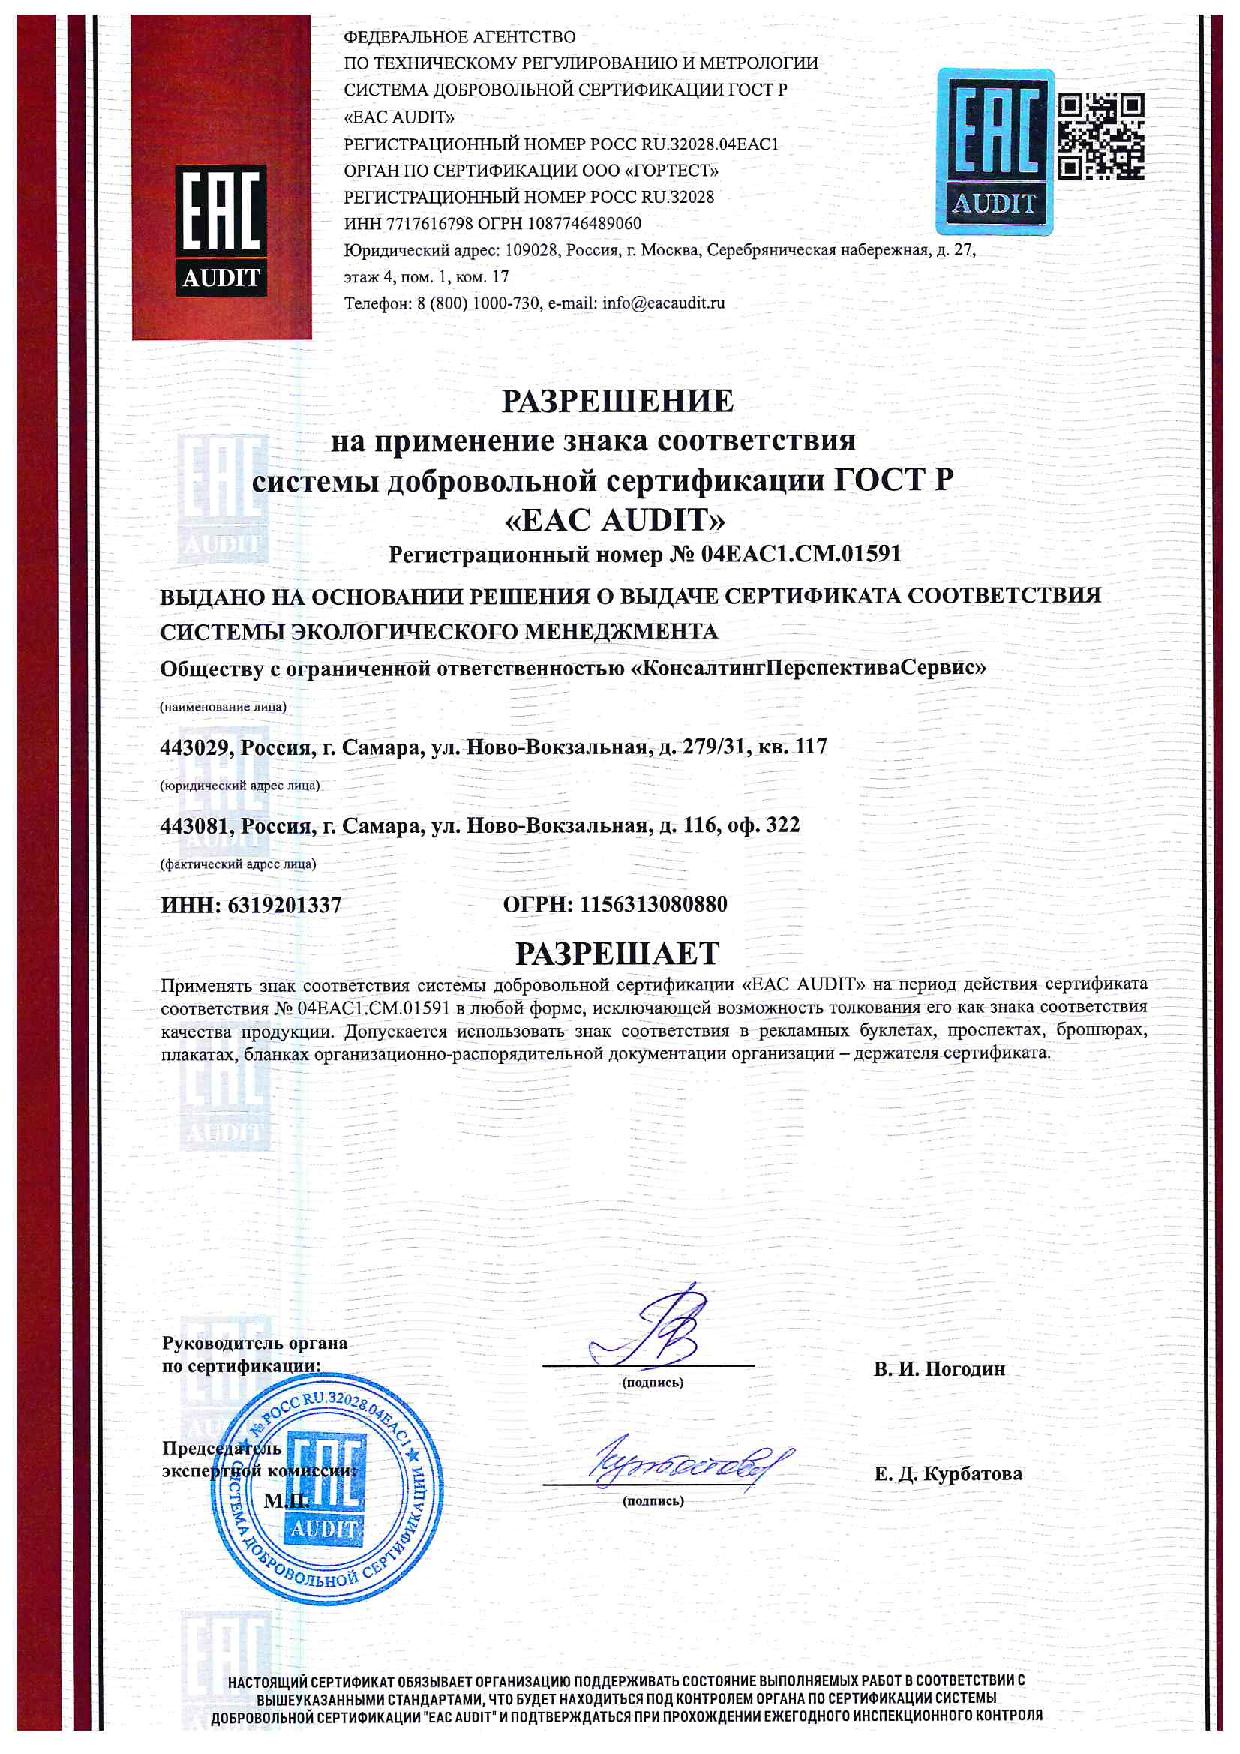 Разрешение на применение знака соответствия системы добровольной сертификации ГОСТ Р «EAC AUDIT»